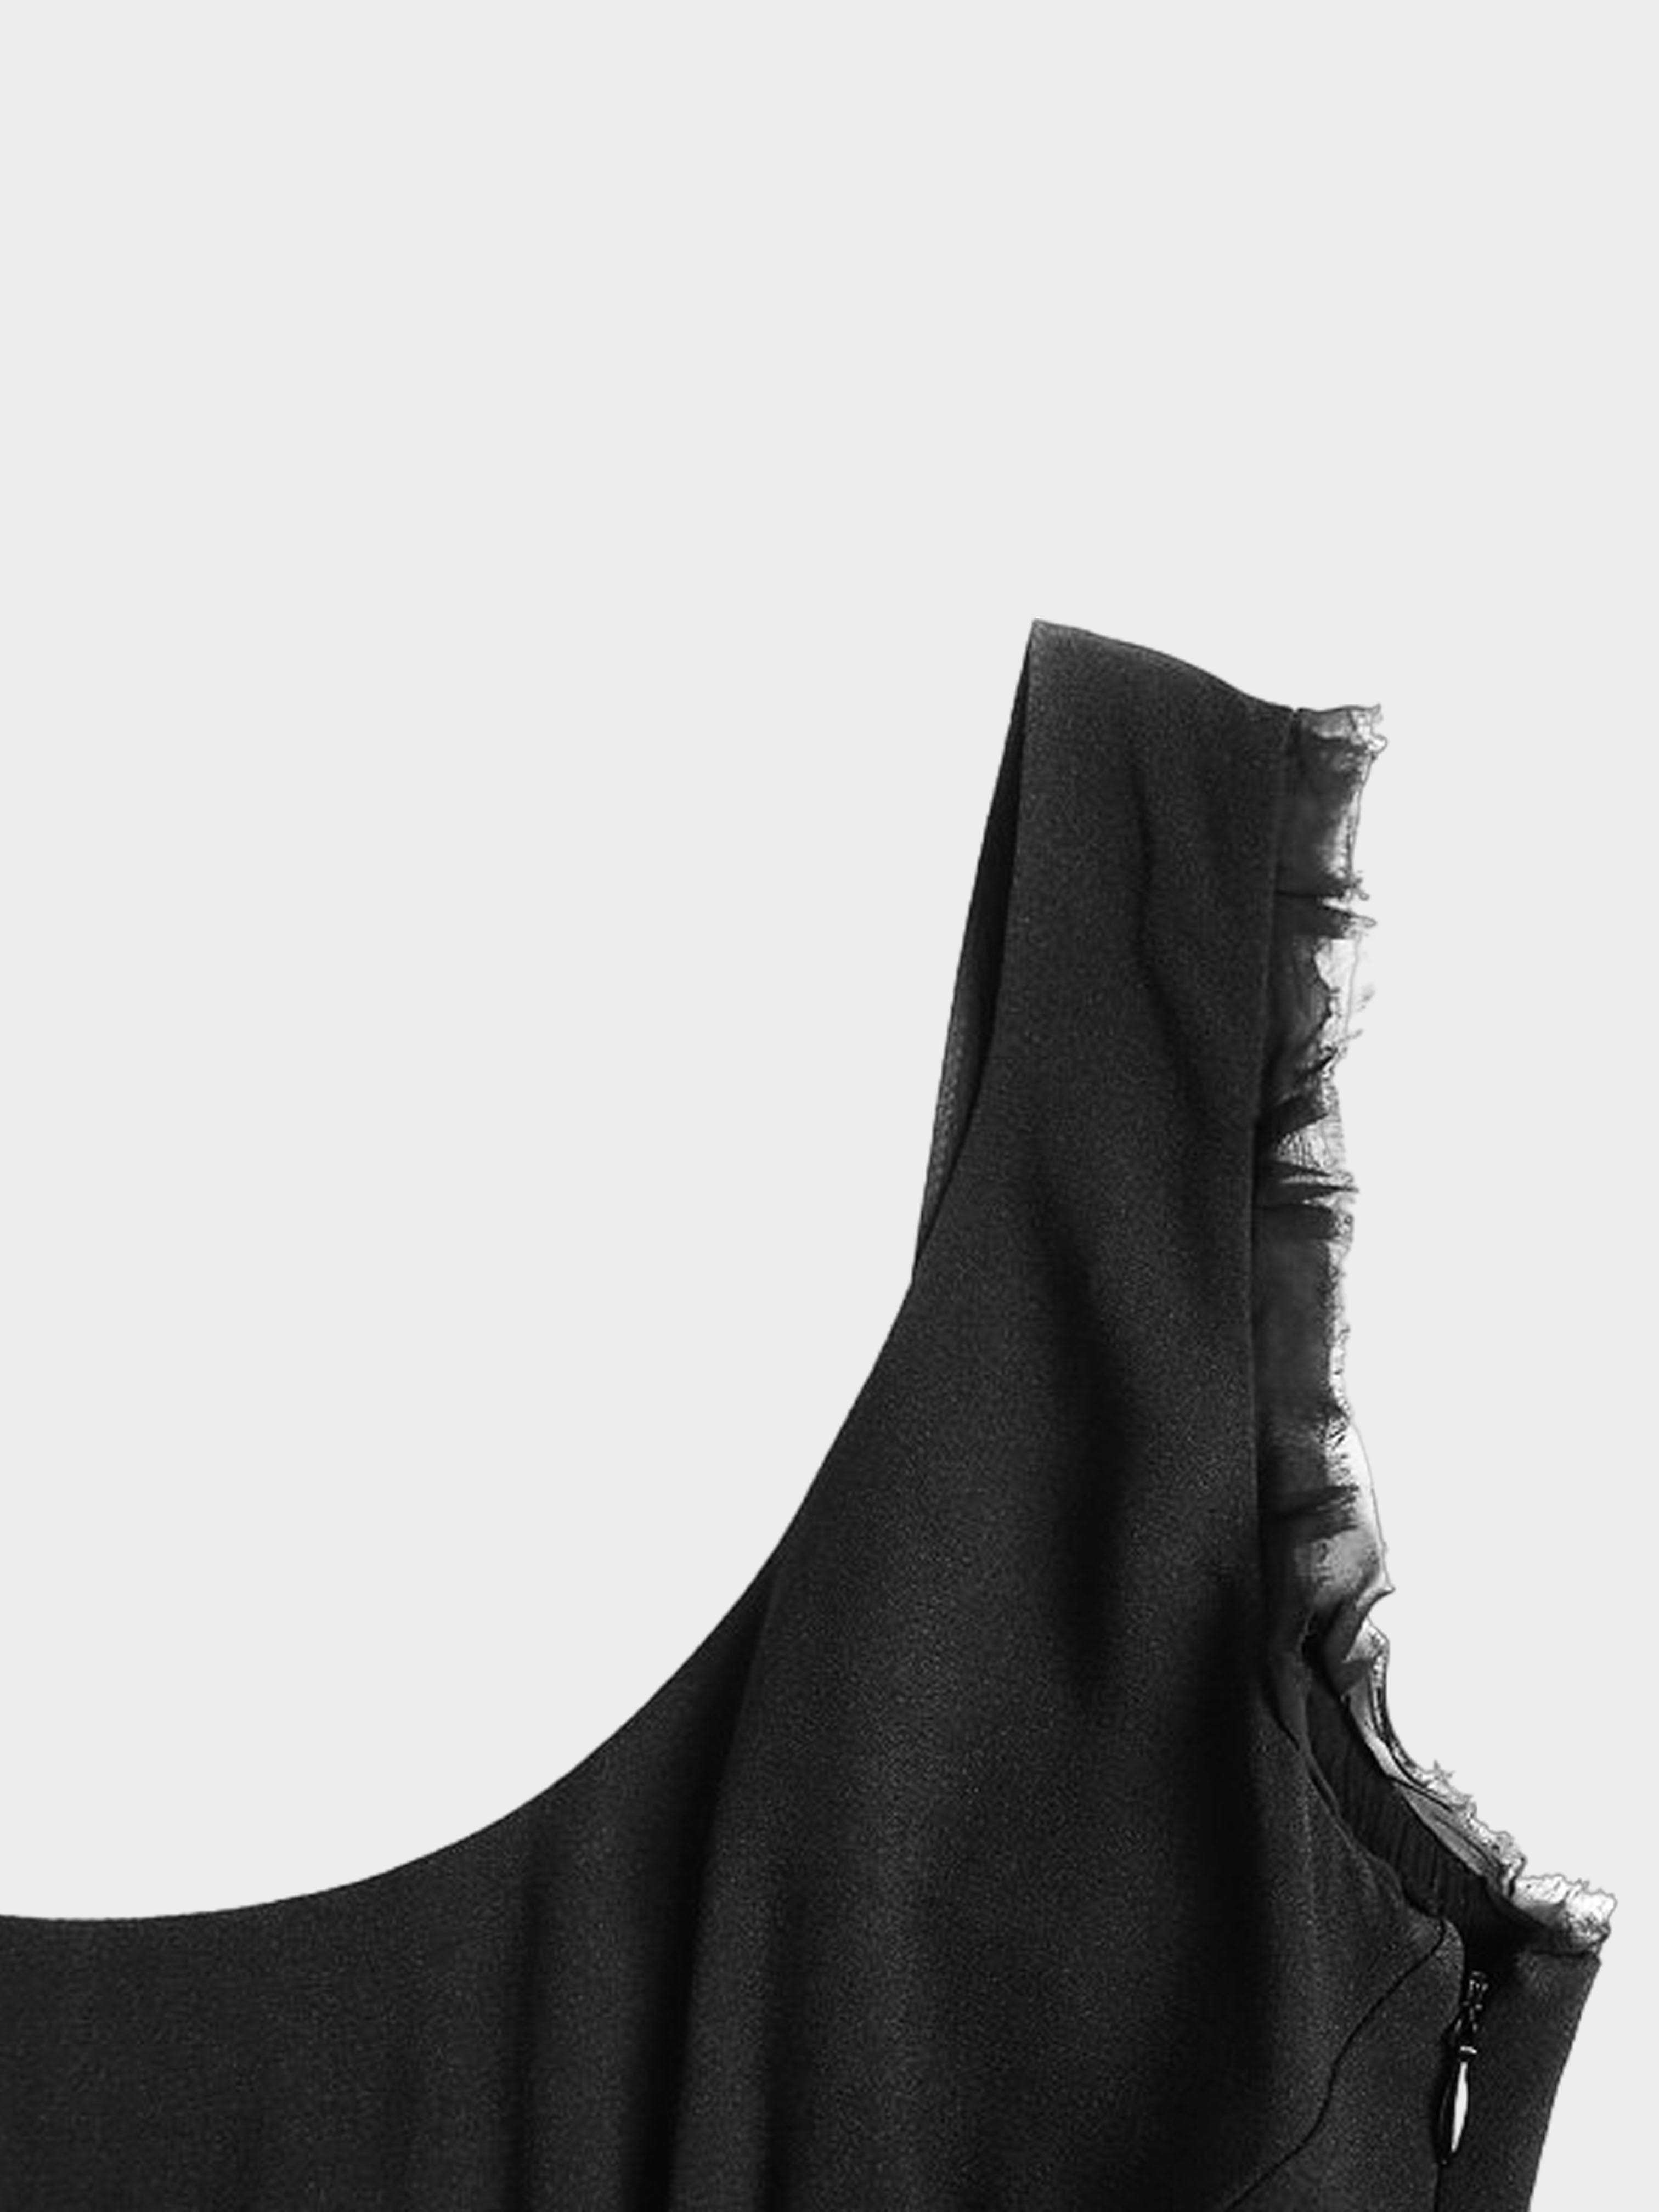 Prada FW 2000 Black Viscose Dress